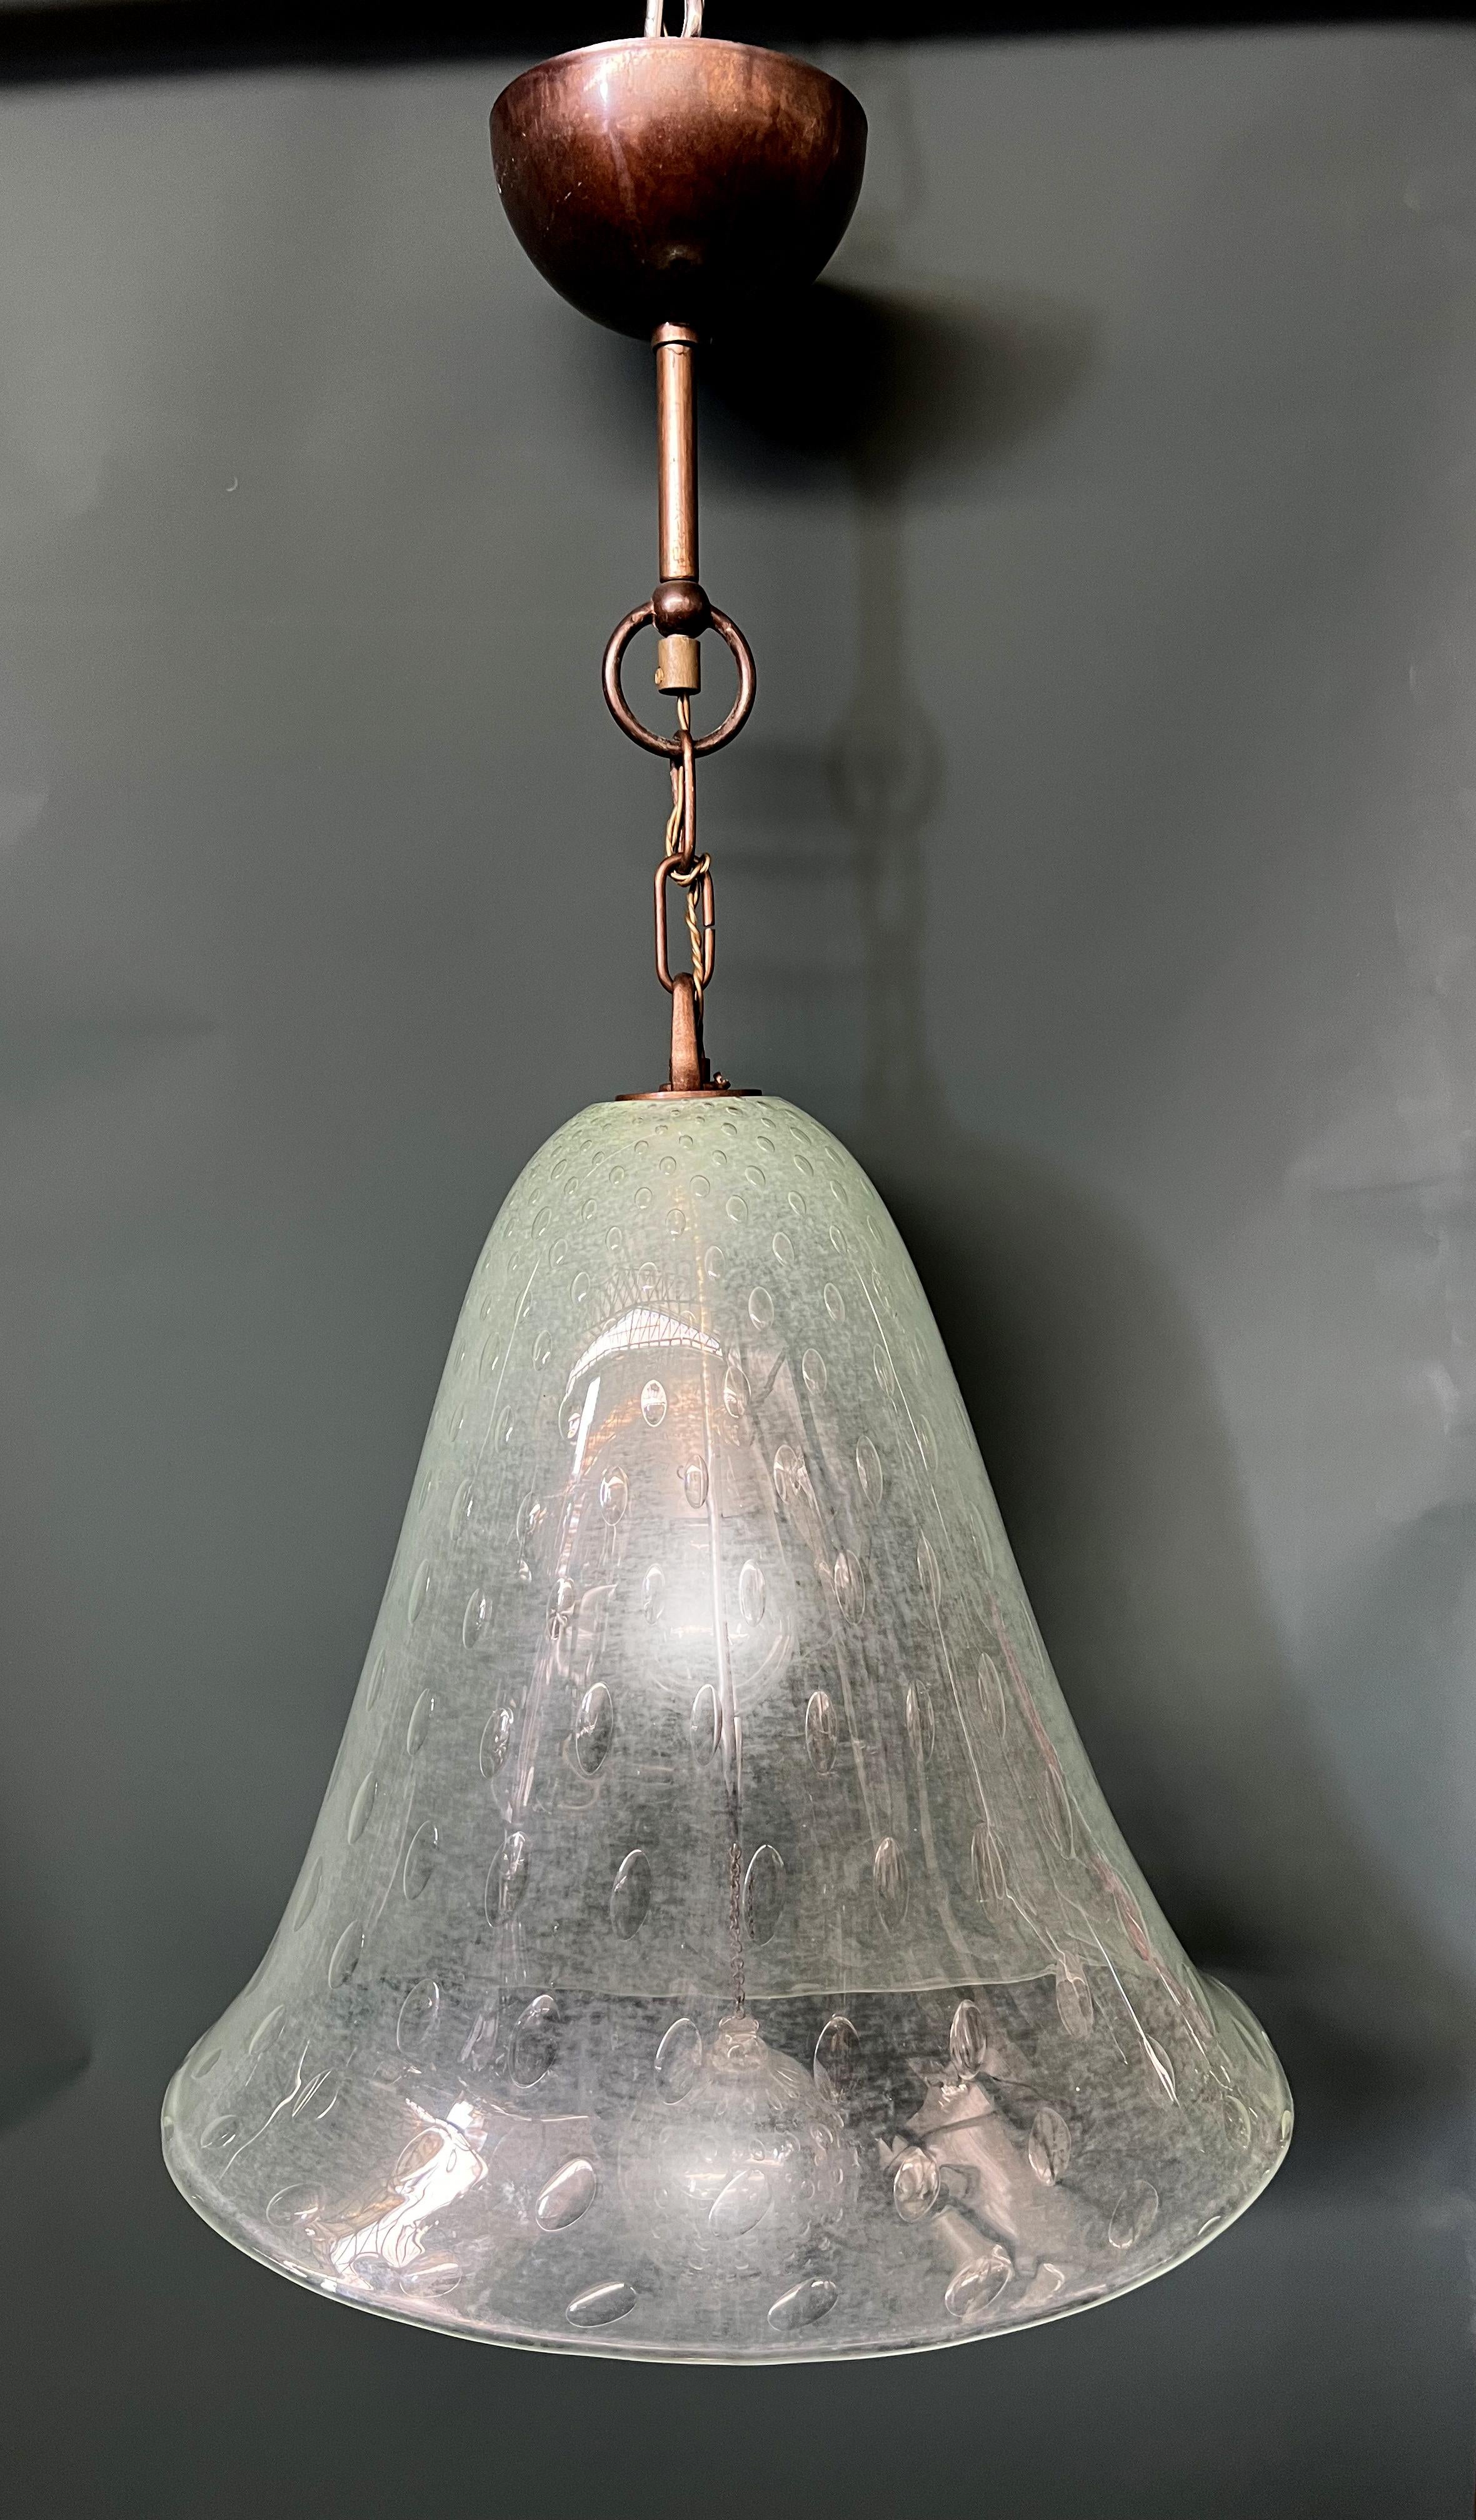 Une magnifique lampe suspendue de la maison de verre italienne Barovier&Toso. Il s'agit d'une de leurs conceptions documentées appelée 